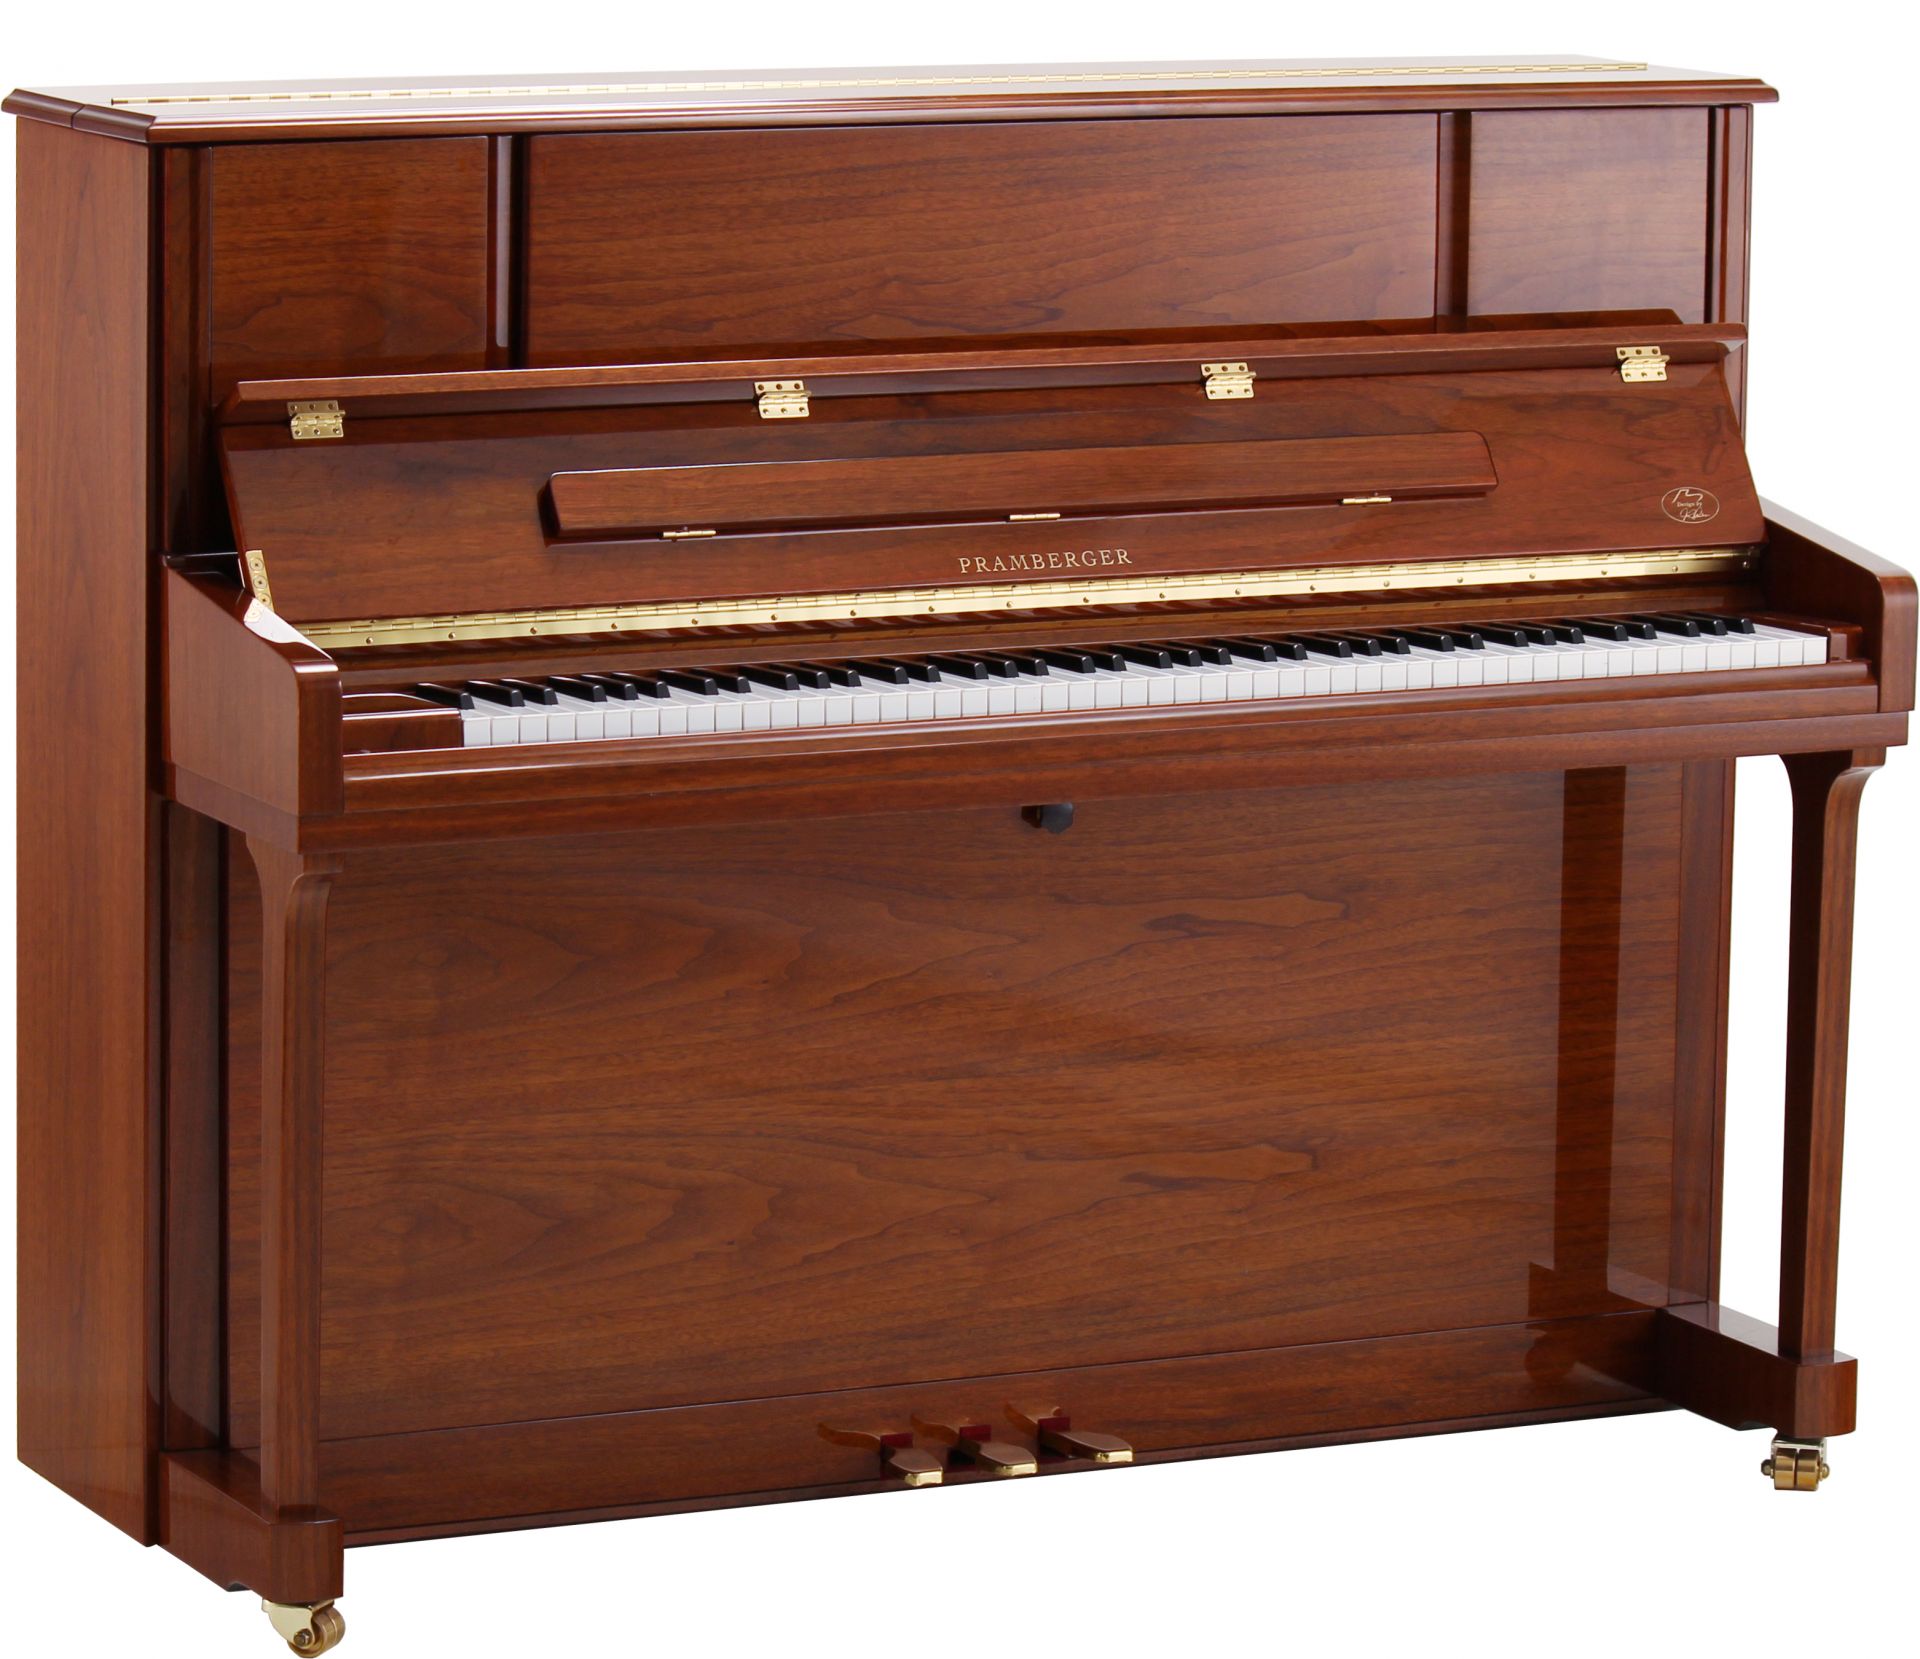 プレンバーガーpv118 Wnp Pv118c Mhp 新発売 2台共に御覧いただけます ピアノセレクションセンター 店舗情報 島村楽器